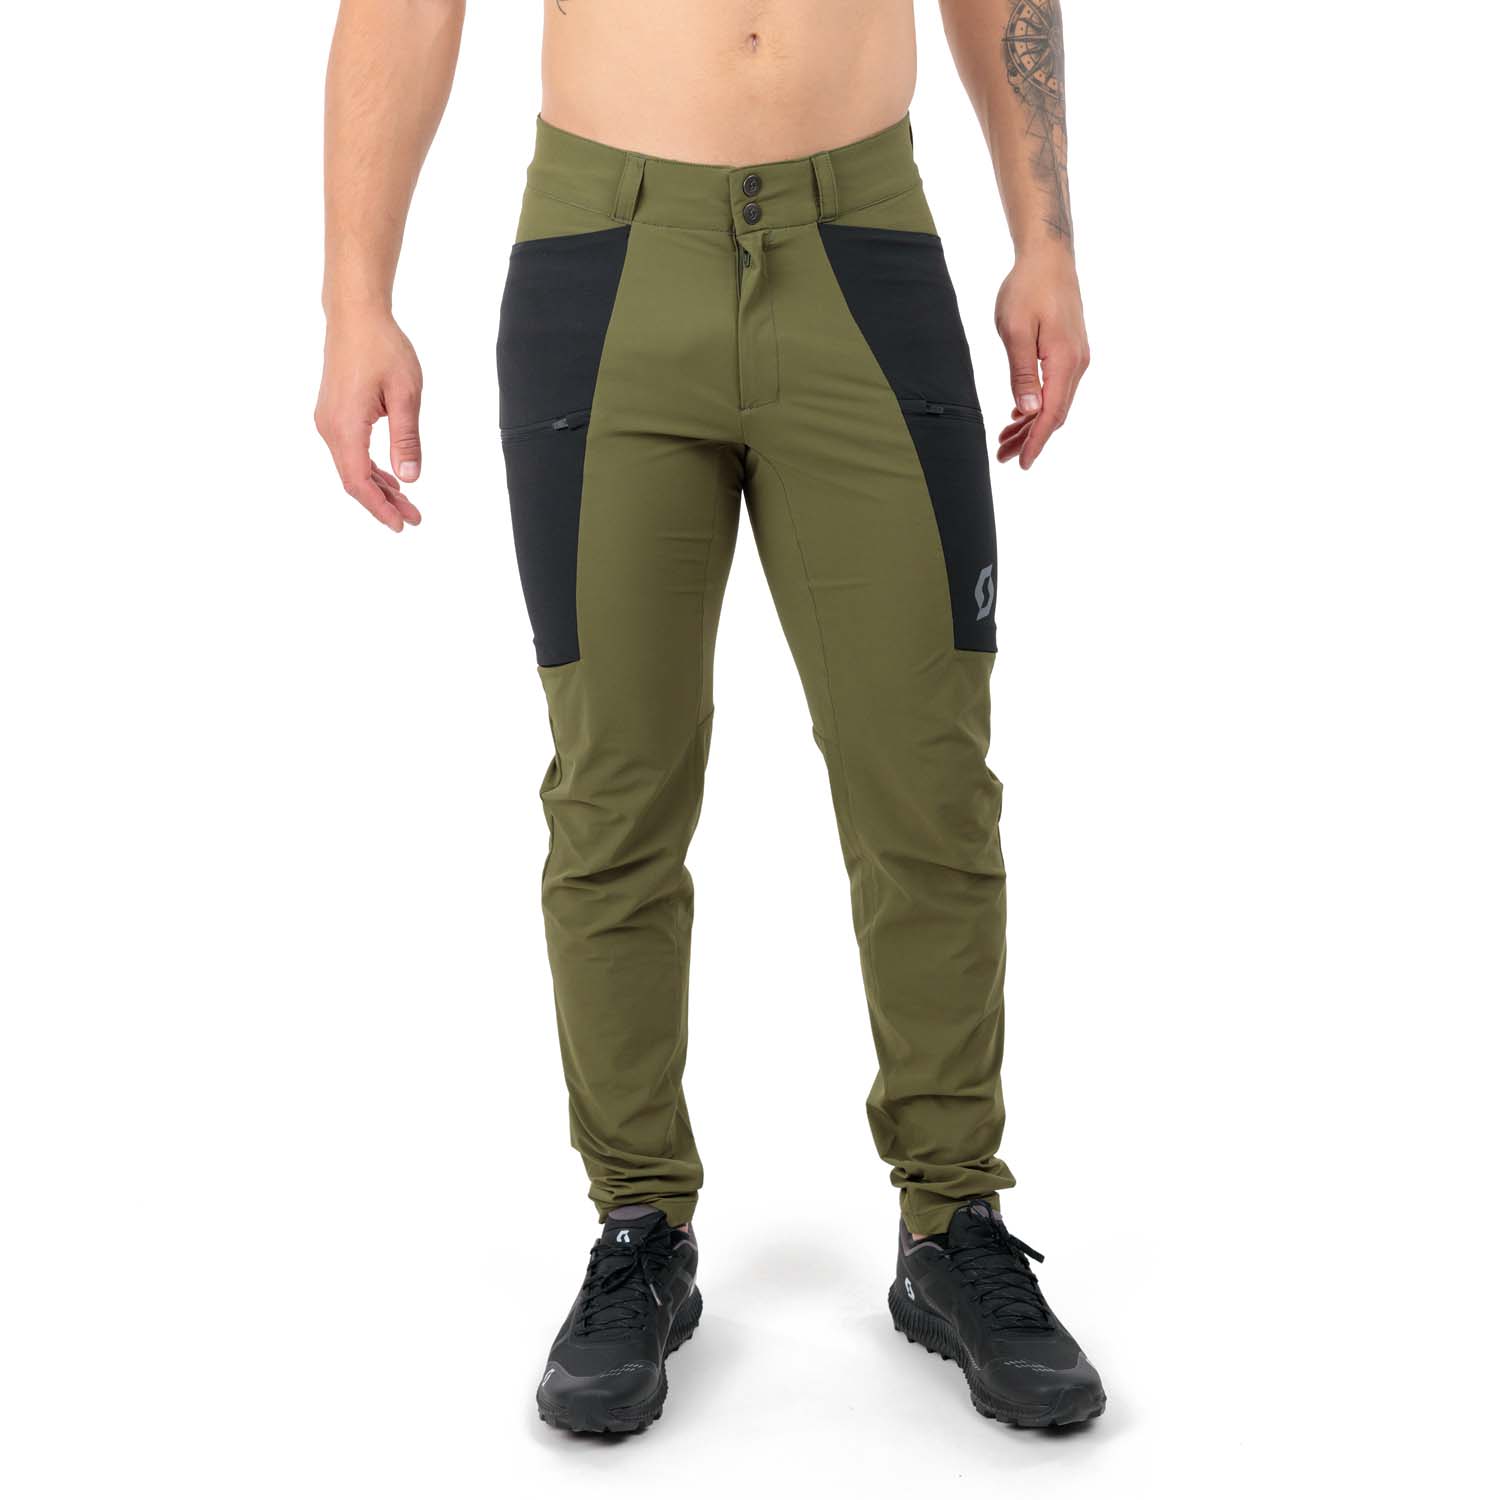 Scott Explorair Tech Pantalones - Fir Green/Black